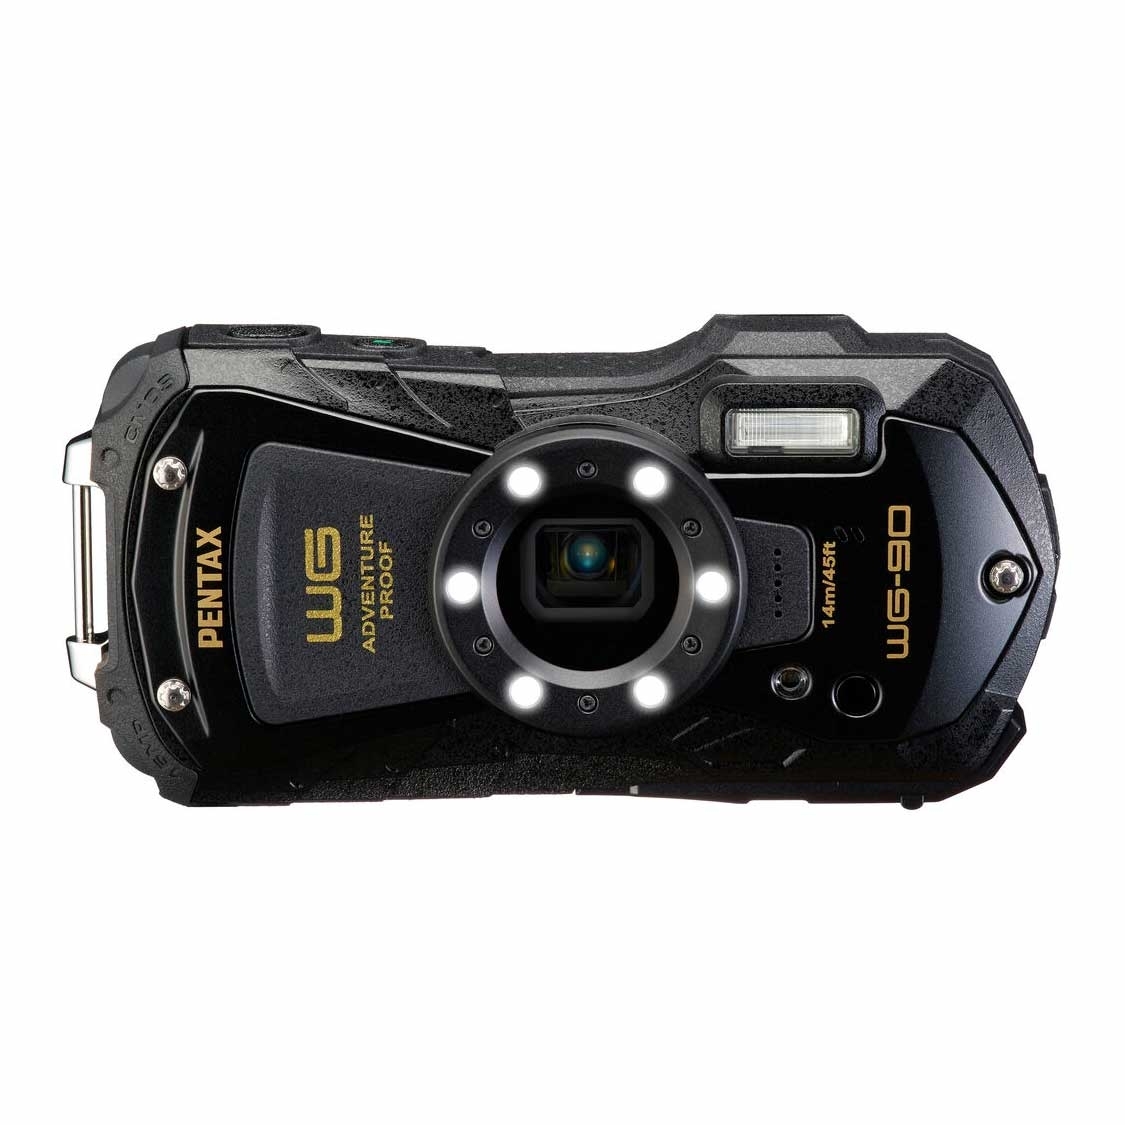 Pentax WG-90 Waterproof Camera (black)